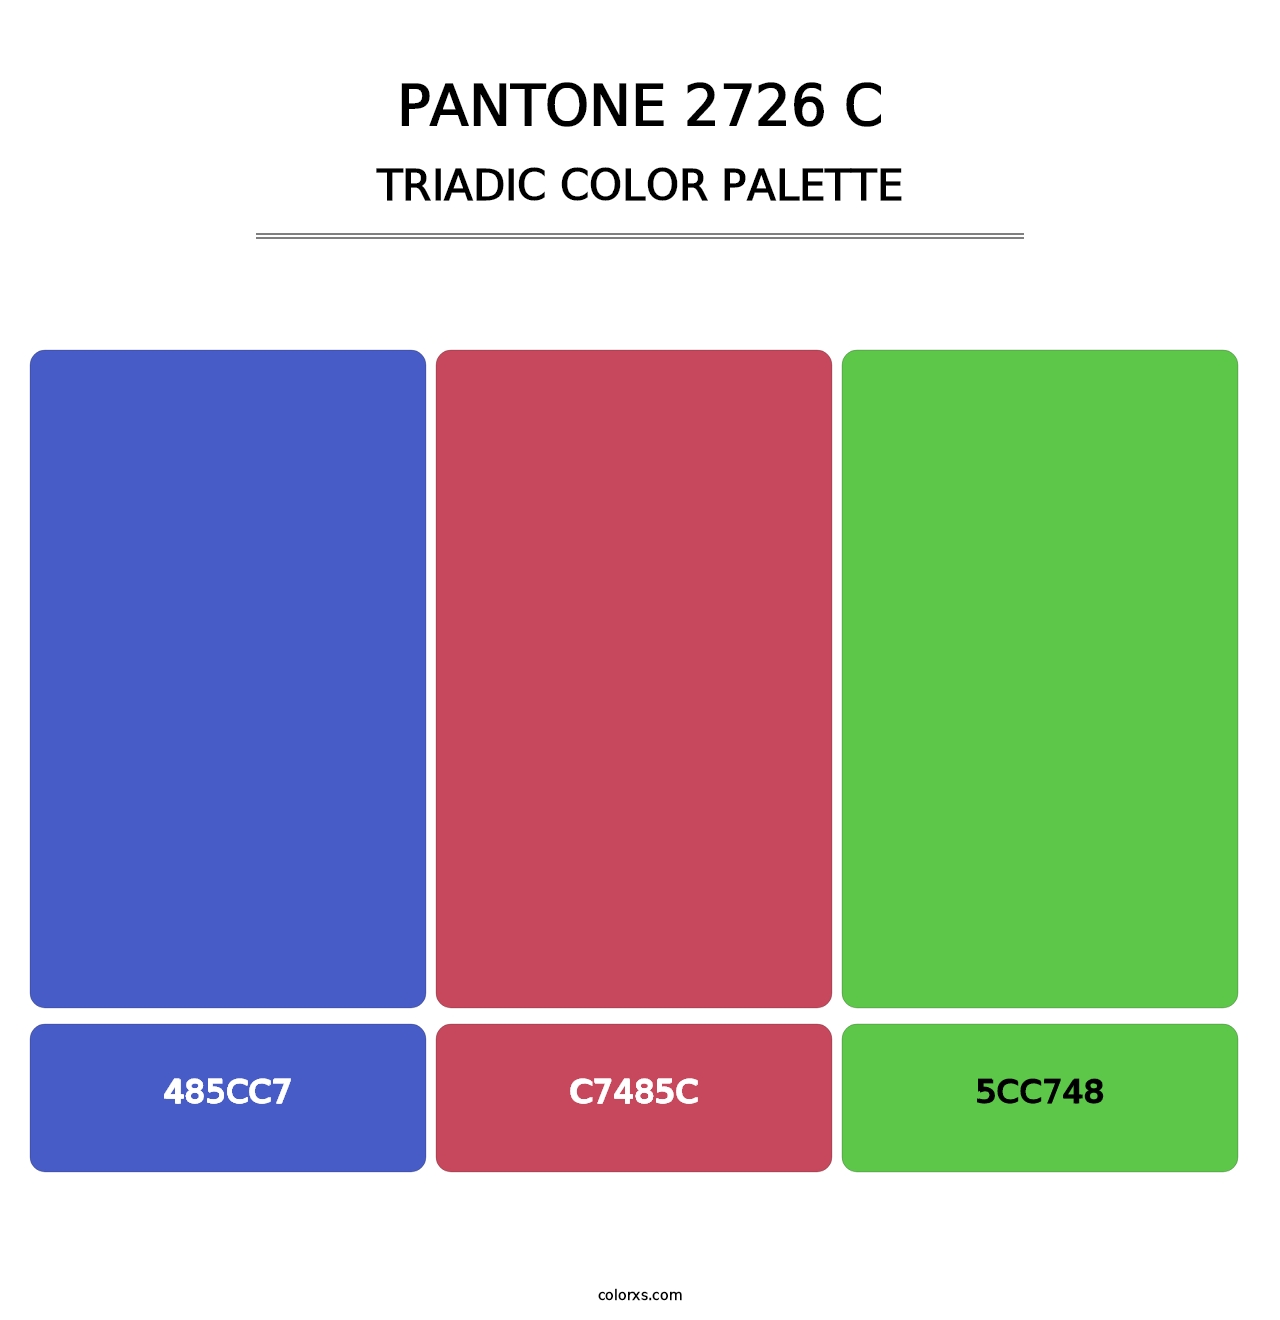 PANTONE 2726 C - Triadic Color Palette